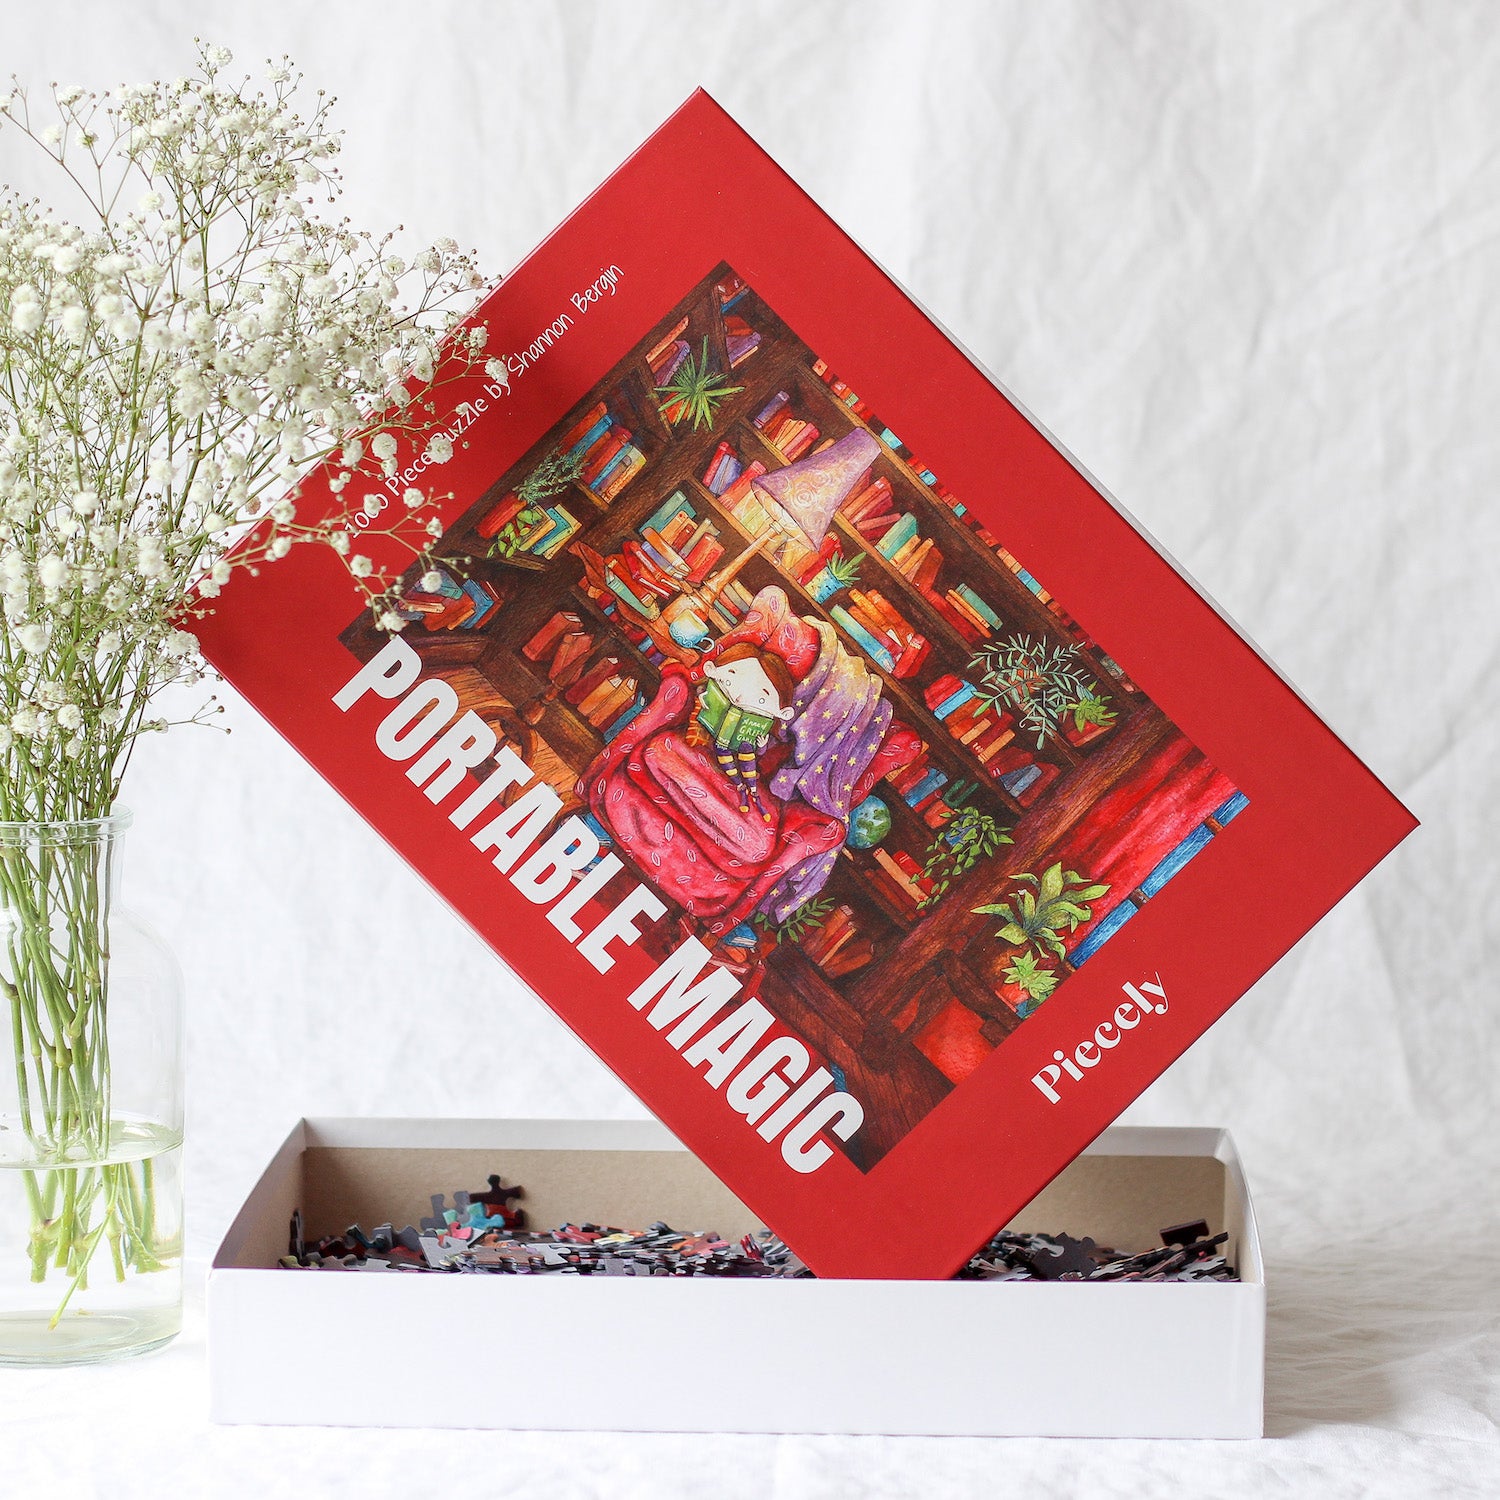 Nachhaltiges 1000-Teile-Puzzle, das ein kleines Mädchen zeigt, das umgeben von hohen Bücherregalen auf einem roten Sessel sitzt und ein Buch liest.